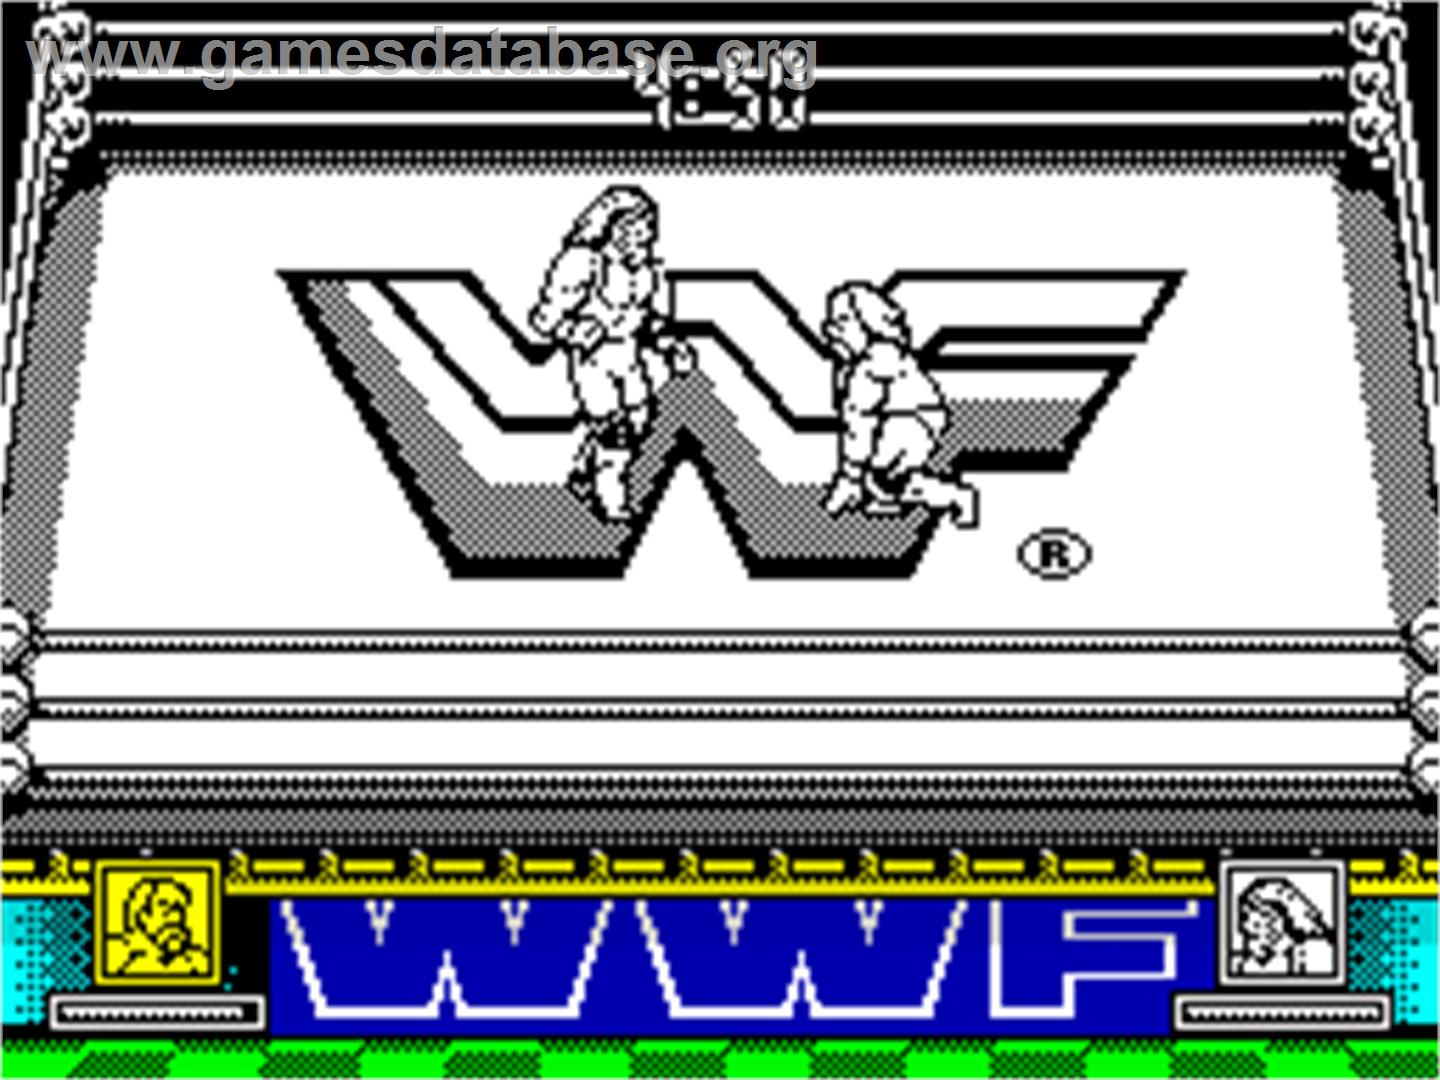 WWF Wrestlemania - Sinclair ZX Spectrum - Artwork - In Game